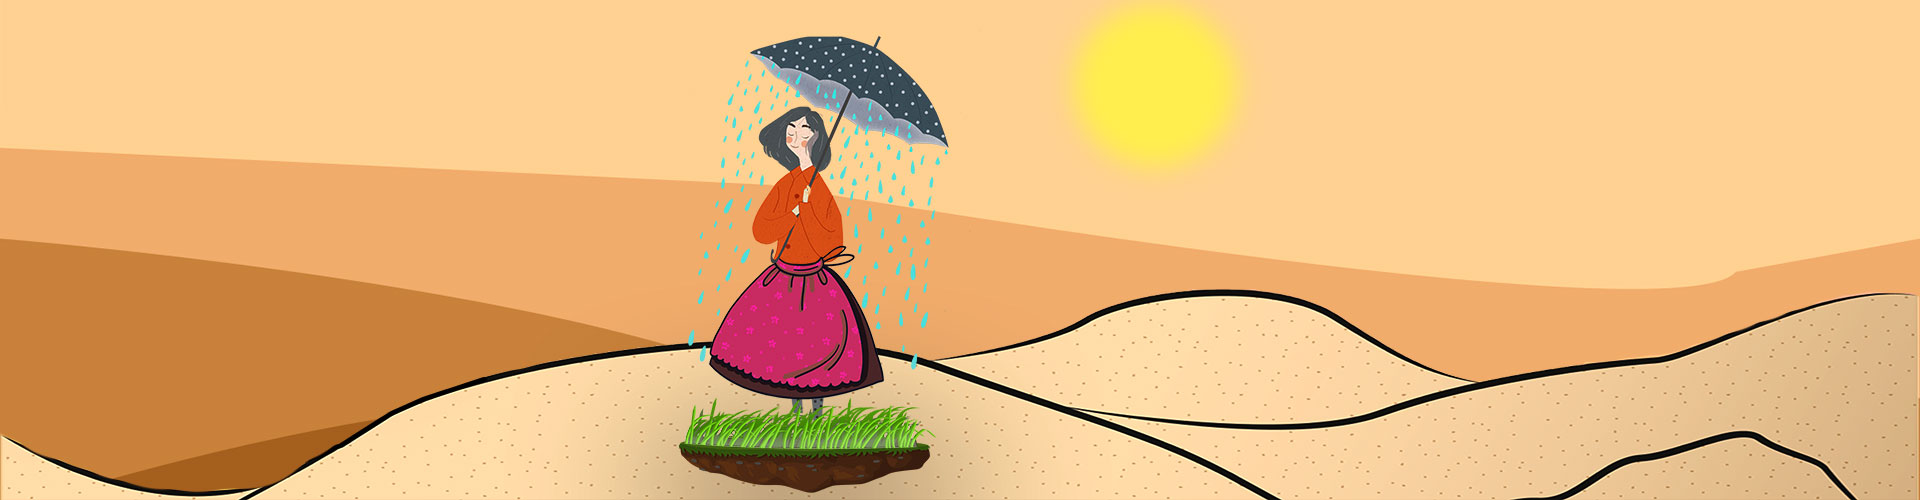 Das Märchen von der Regentrude © Illustration deus werbung